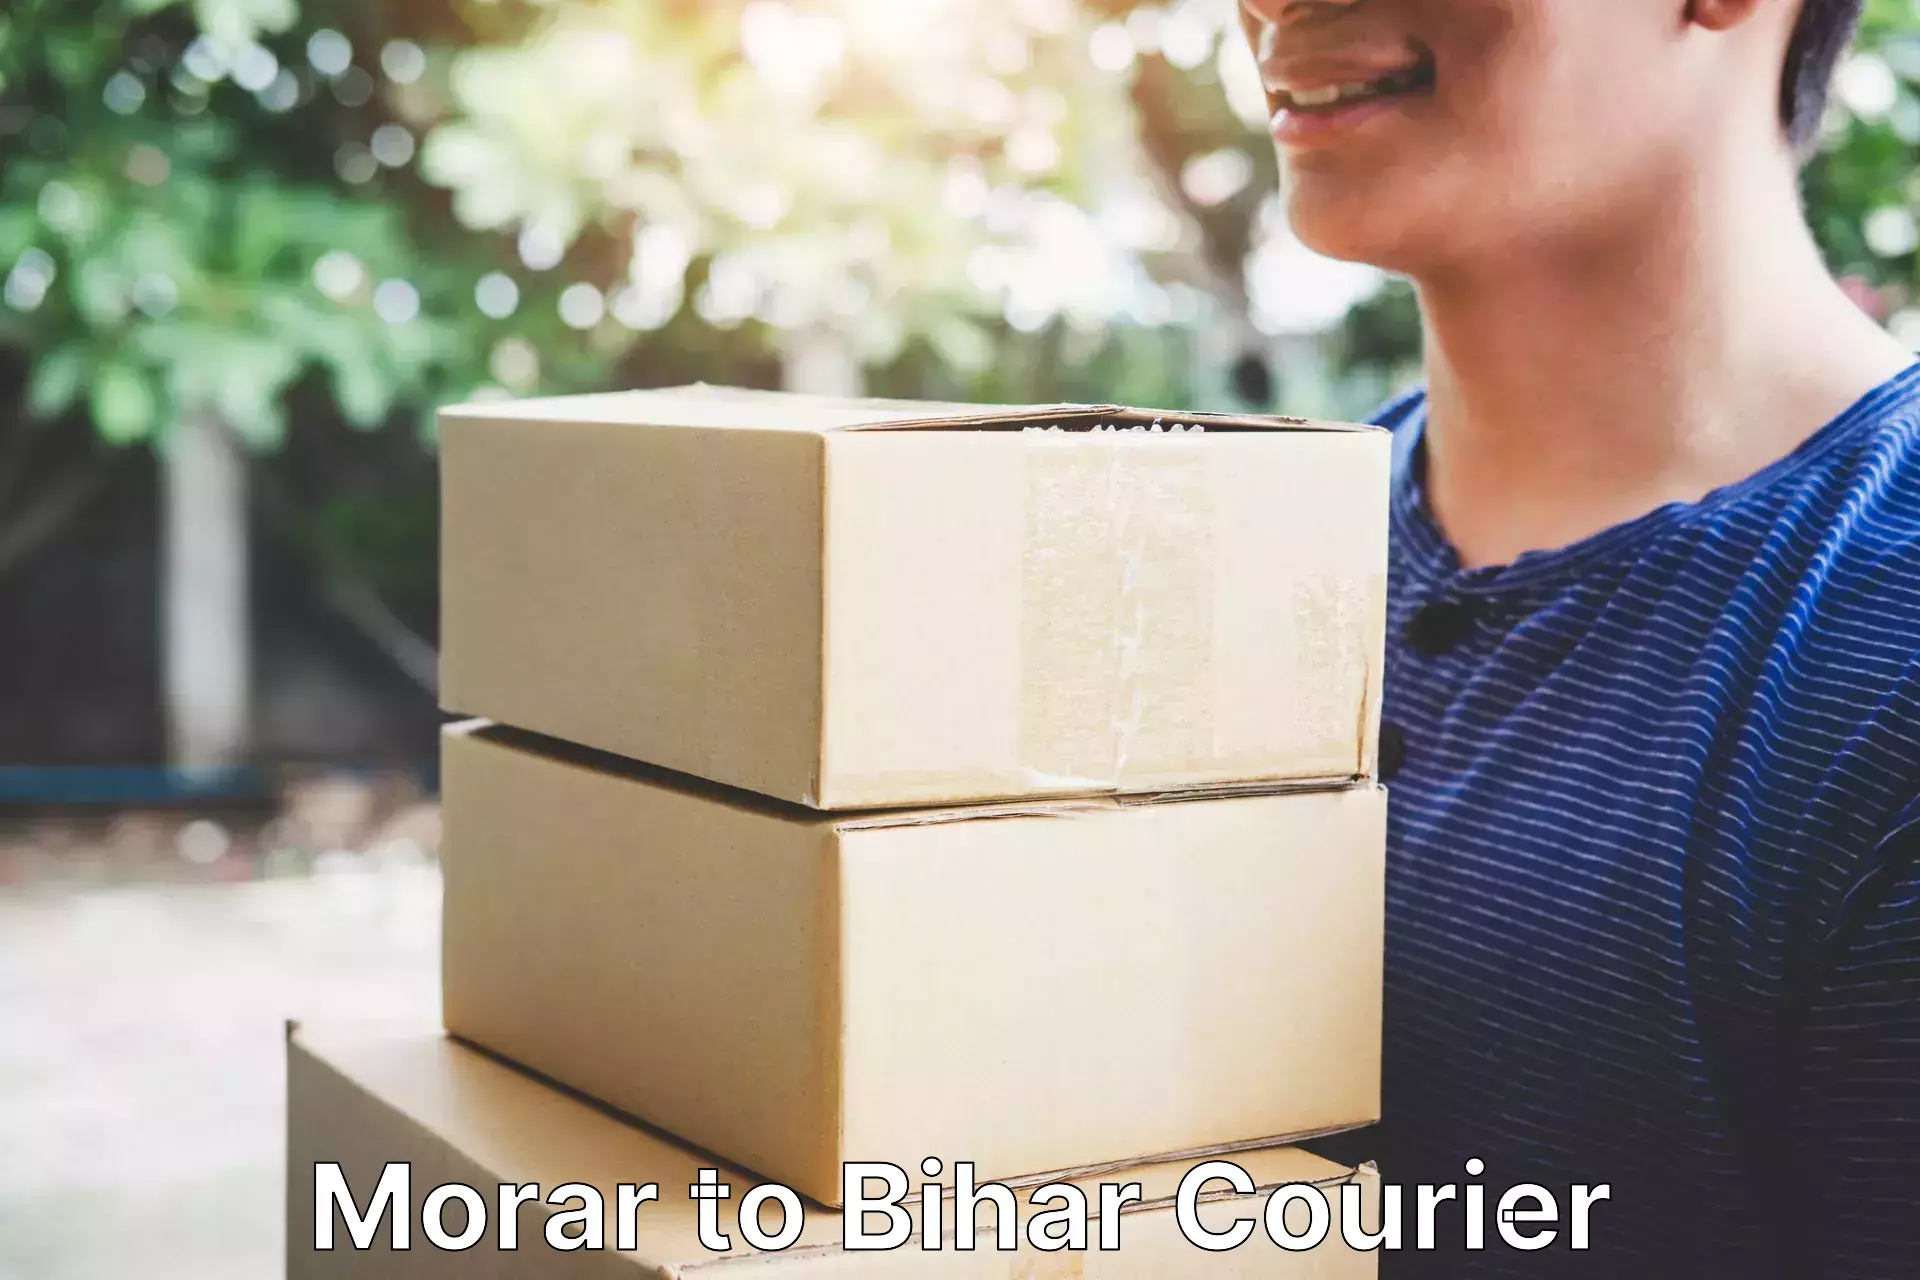 Efficient freight transportation Morar to Bihar